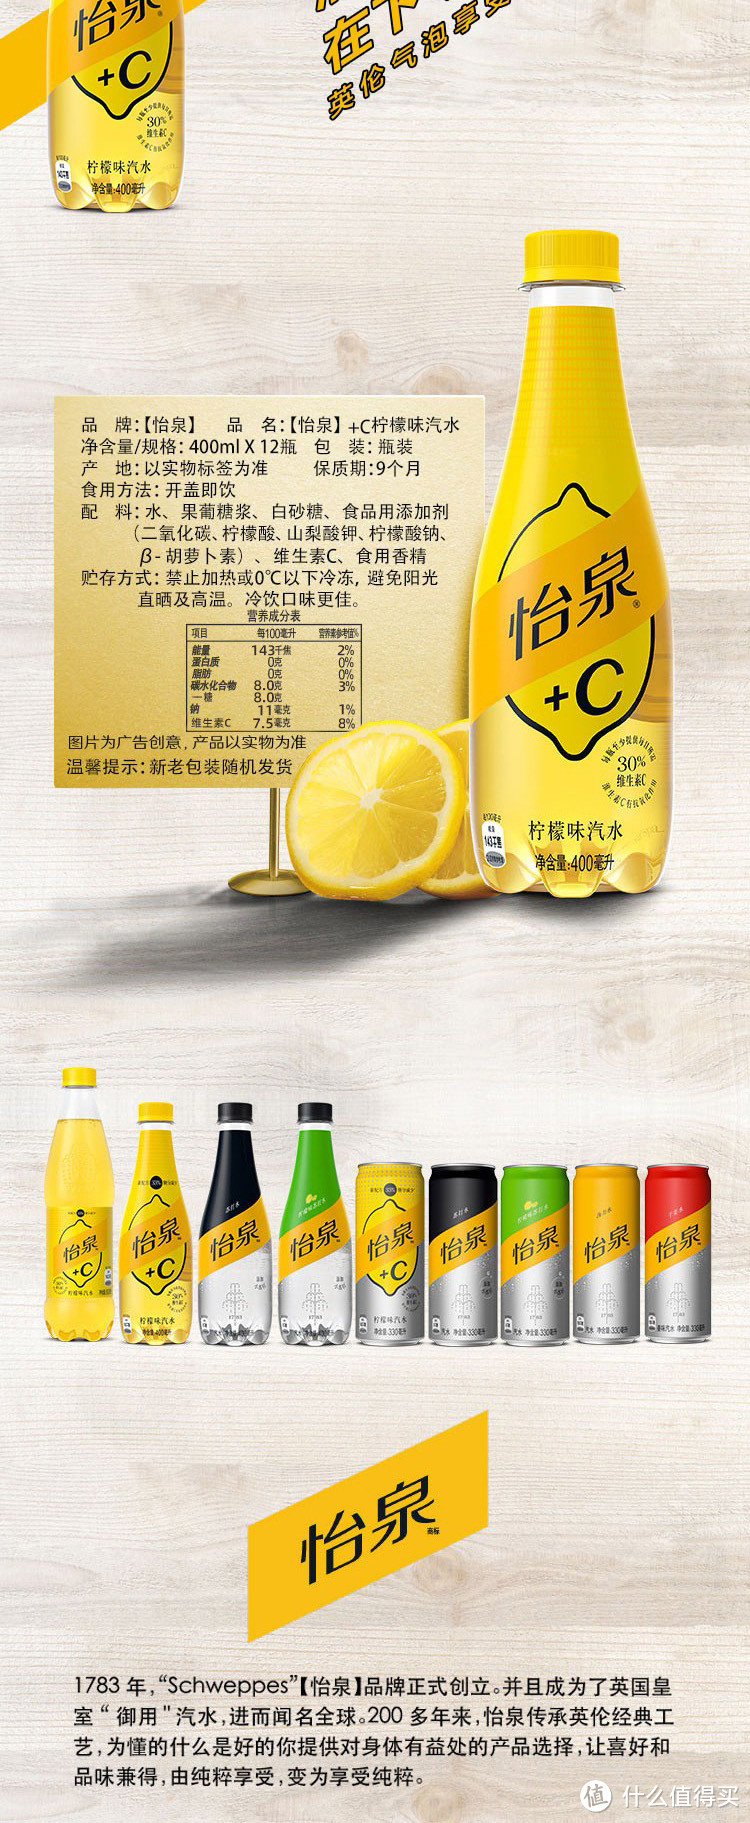 可口可乐怡泉+C碳酸饮料柠檬味汽水——清新口感蕴含维C的健康选择